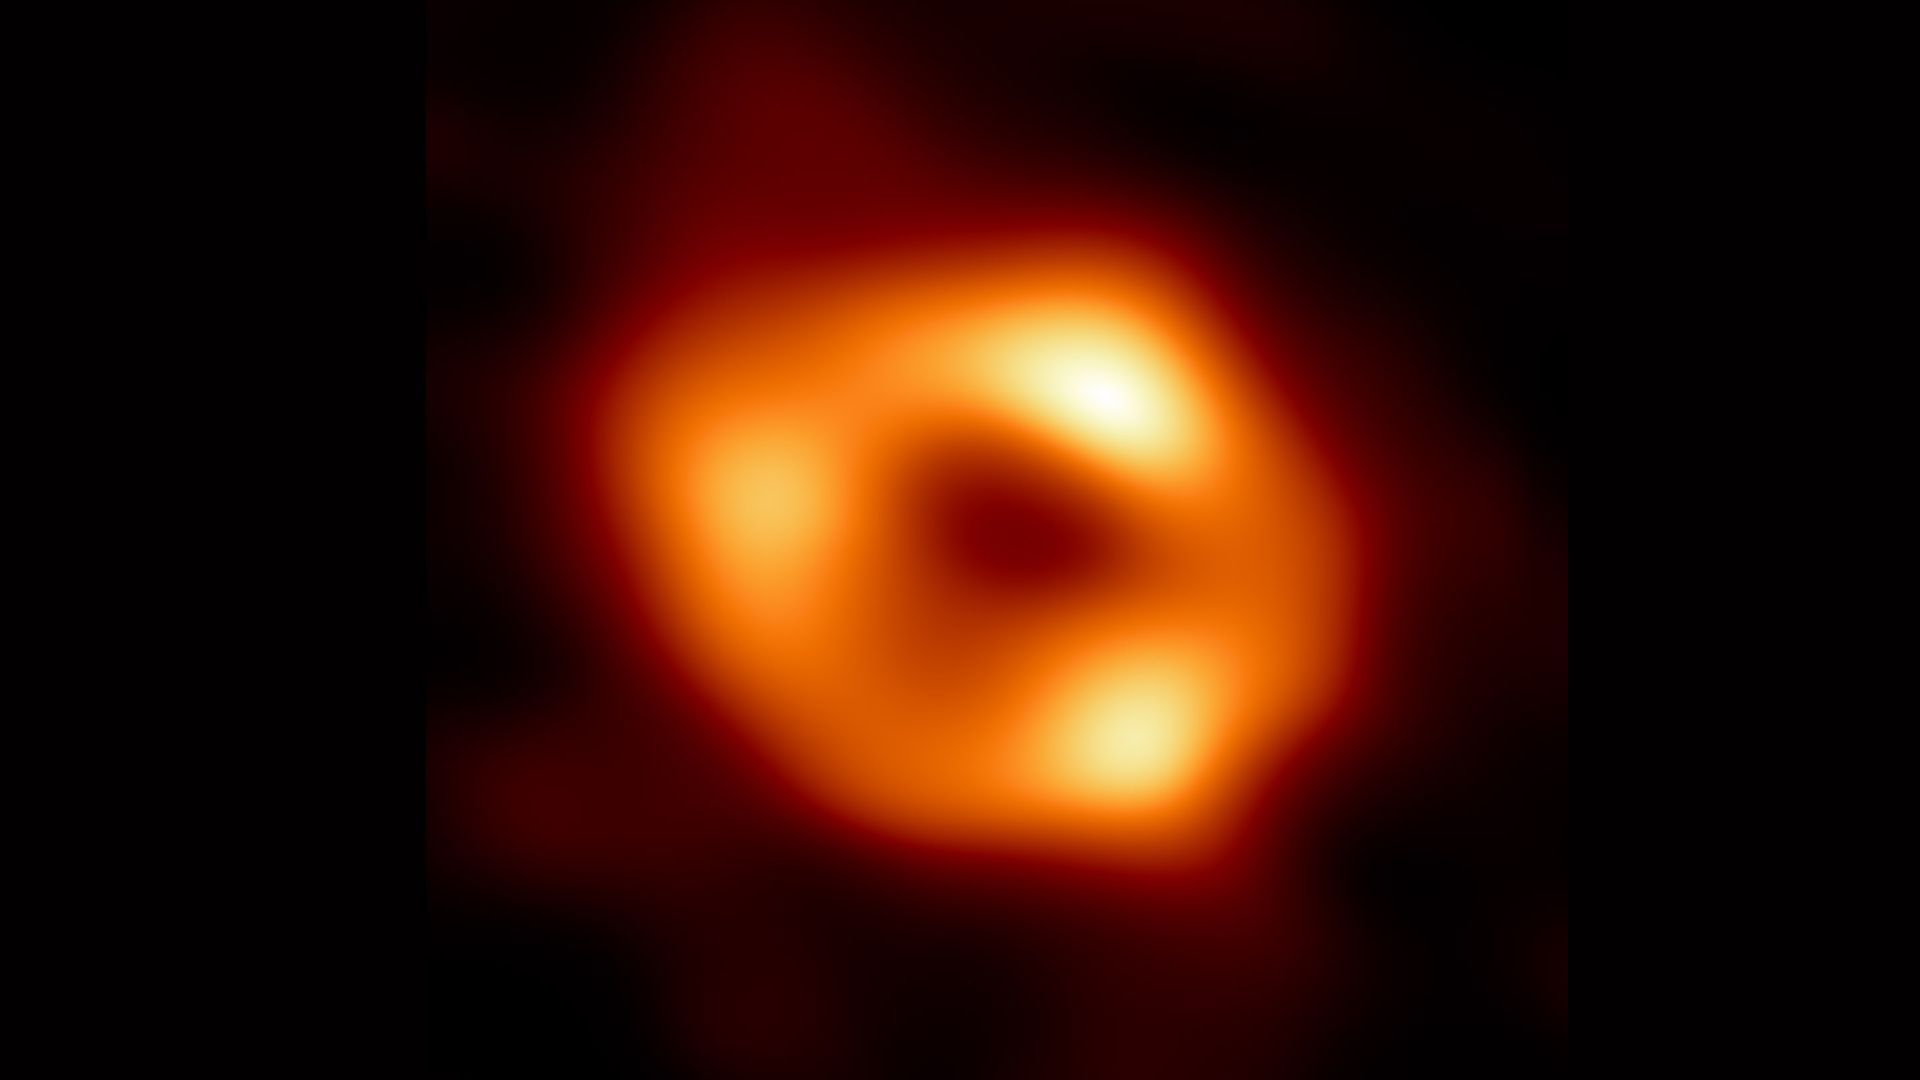 Supermasywna czarna dziura w centrum naszej galaktyki Drogi Mlecznej na zdjęciu po raz pierwszy